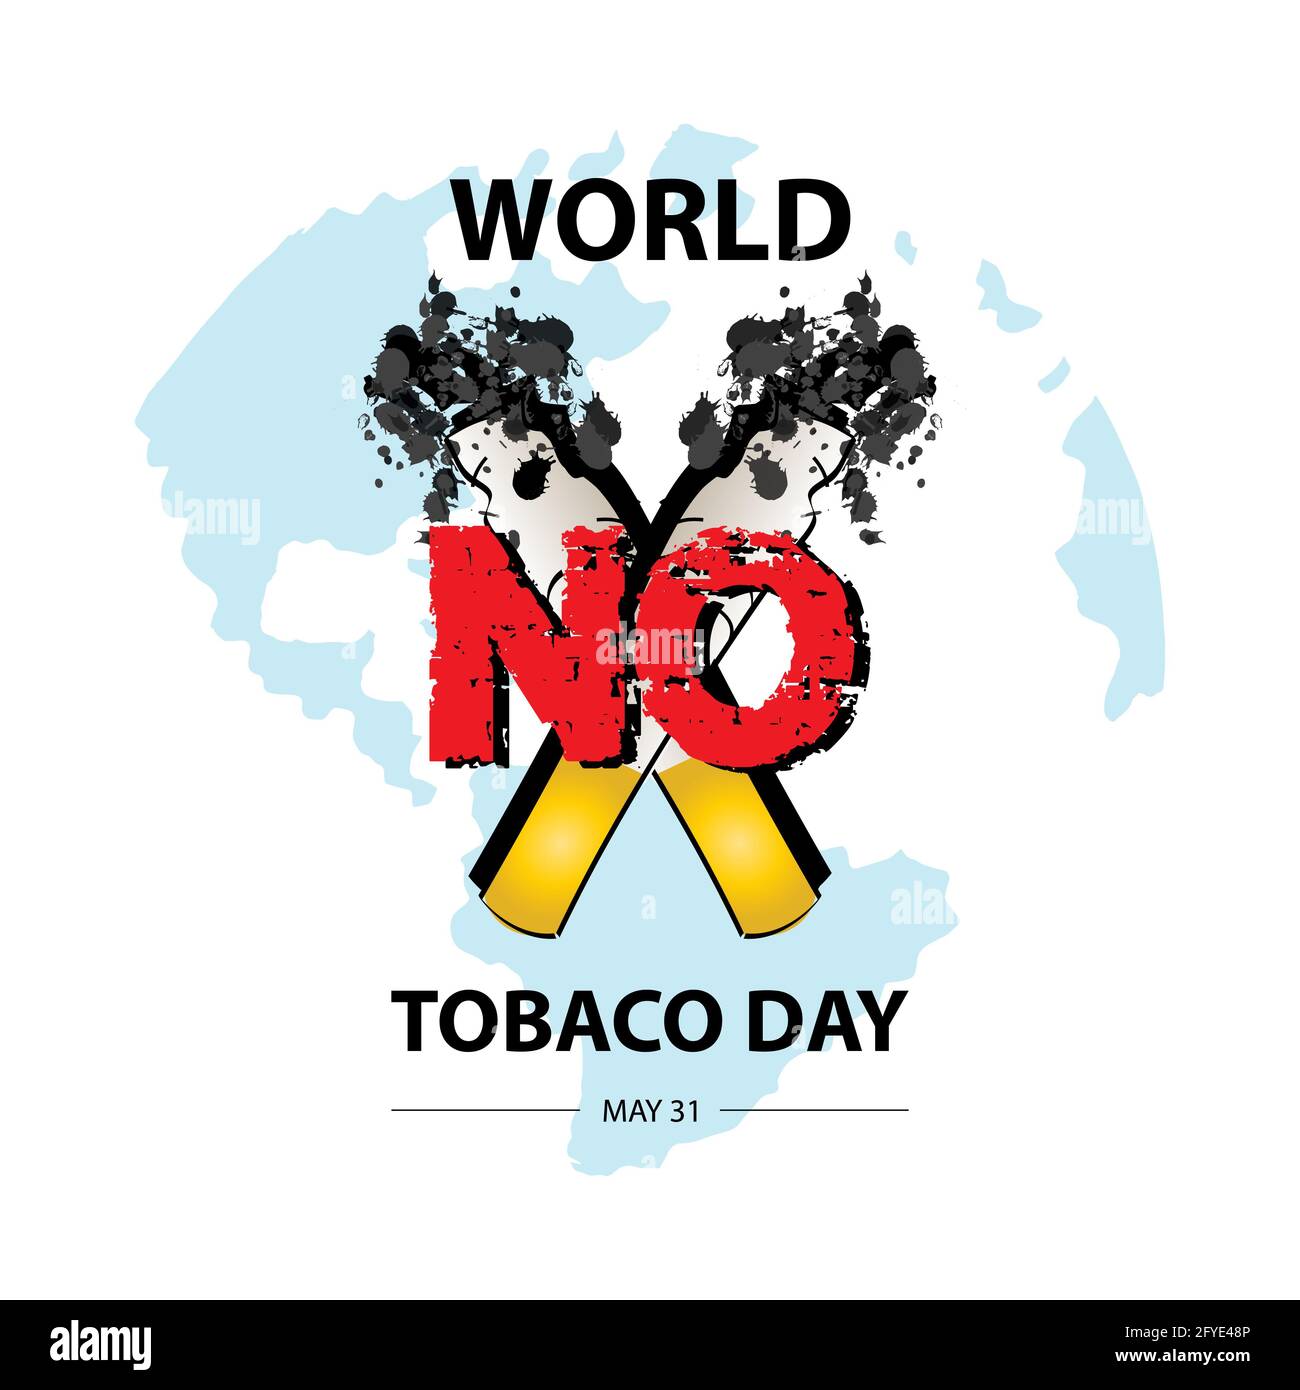 World no tobacco day concept Stock Photo